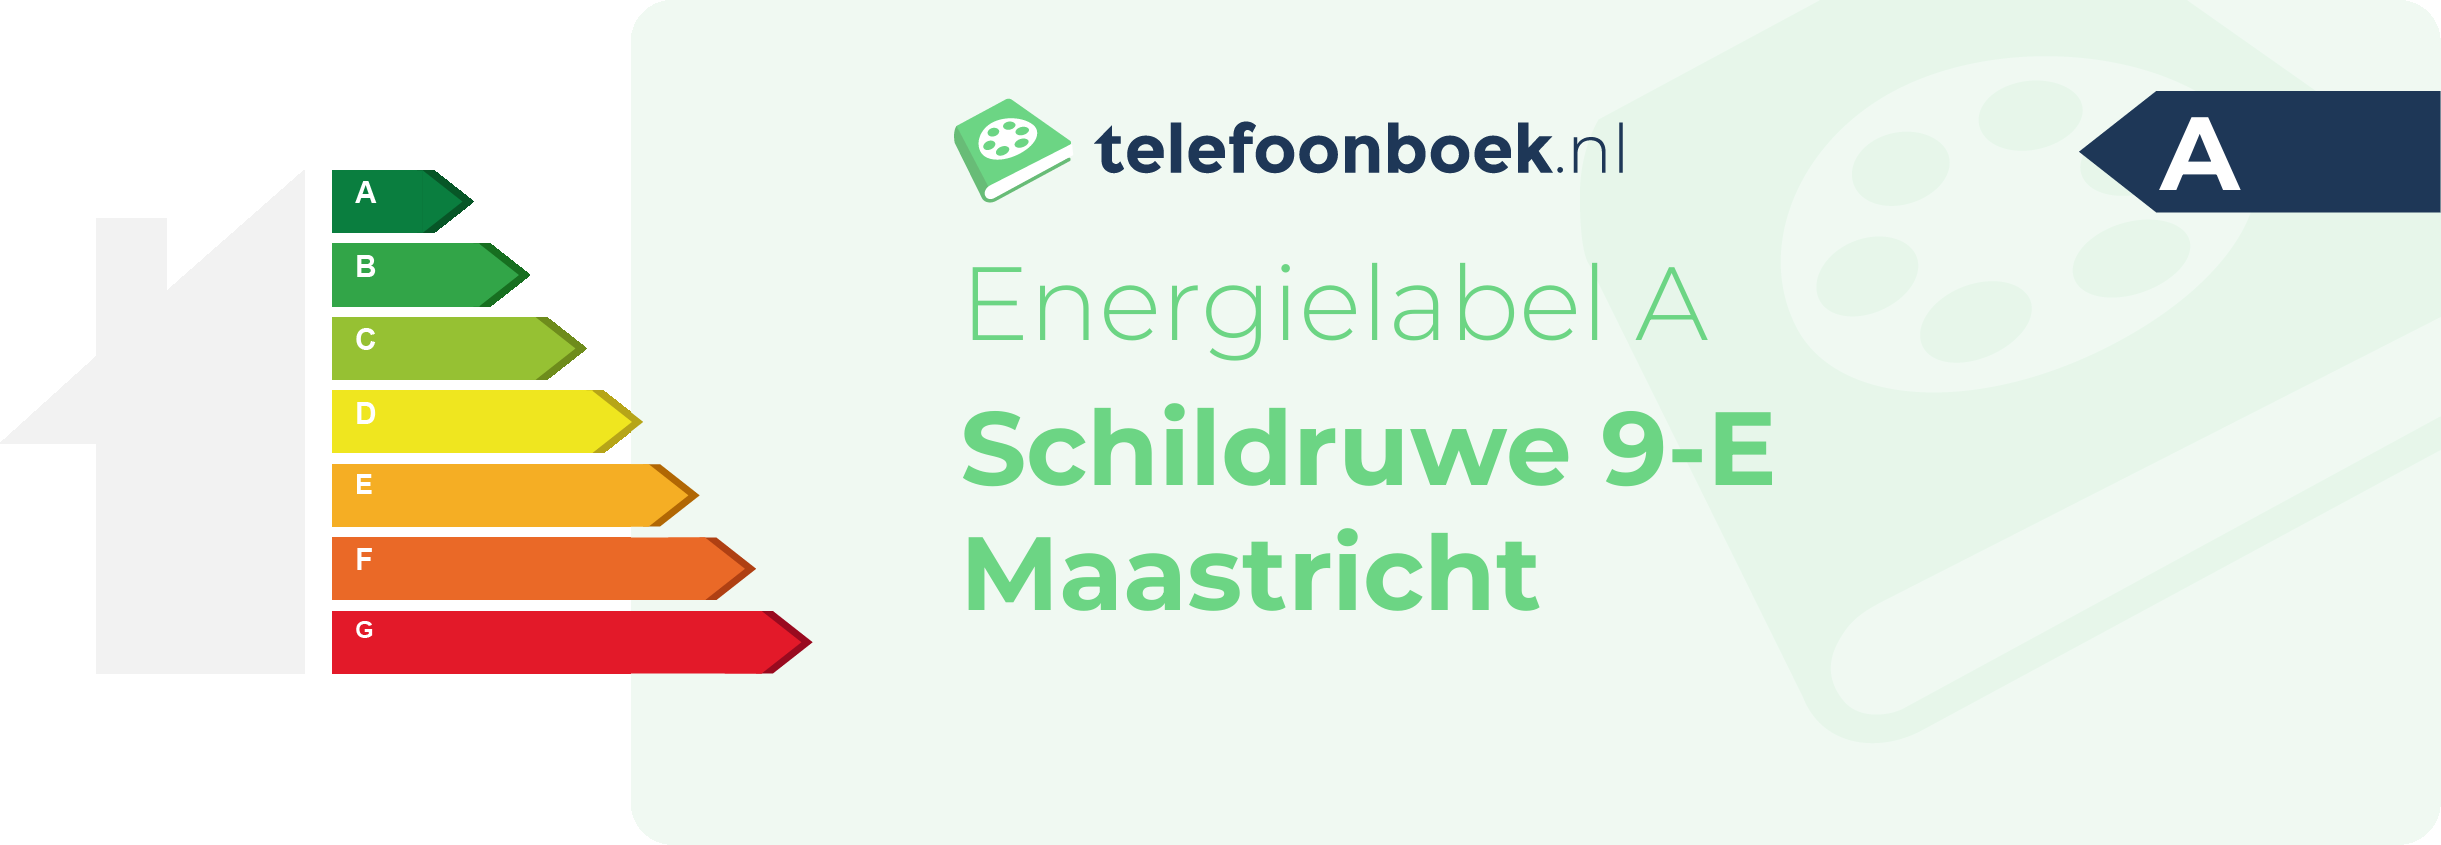 Energielabel Schildruwe 9-E Maastricht